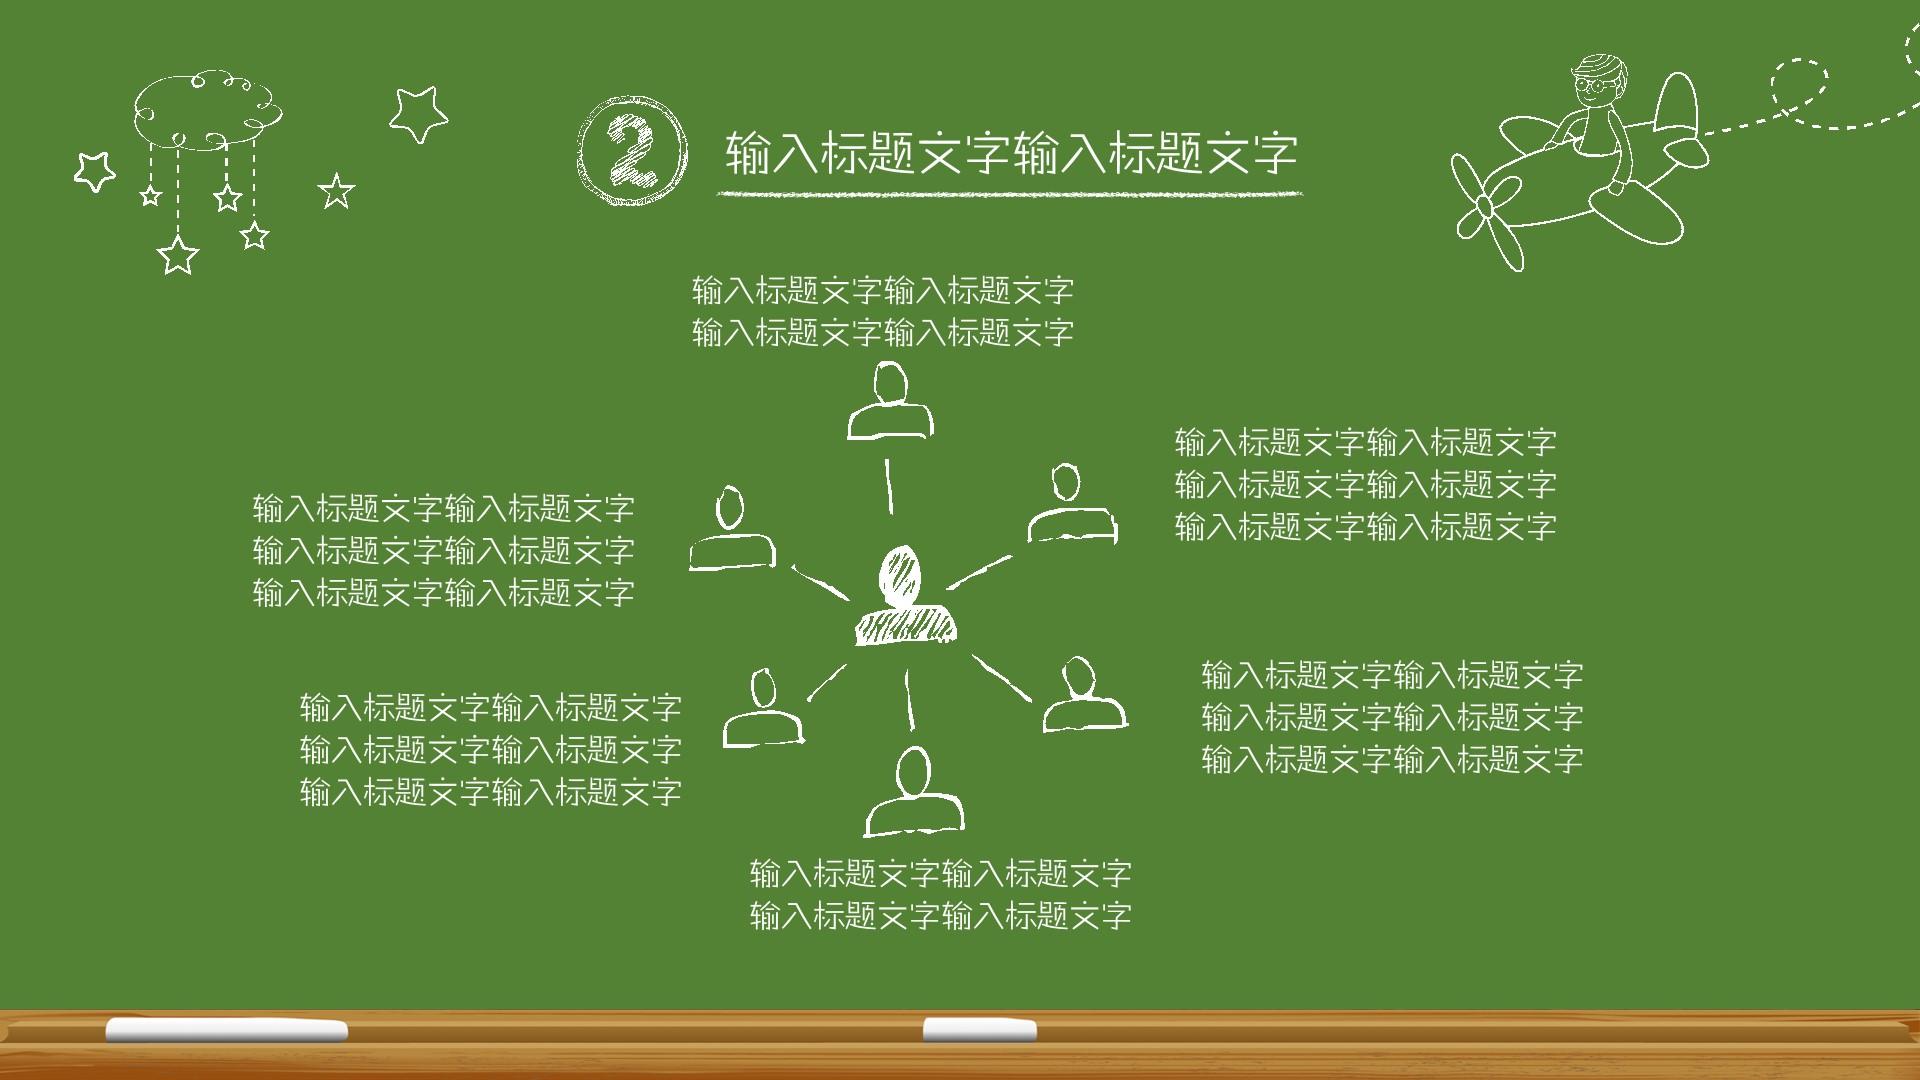 教育教学绿色橙色卡通简洁云素材PPT模板1672642271016